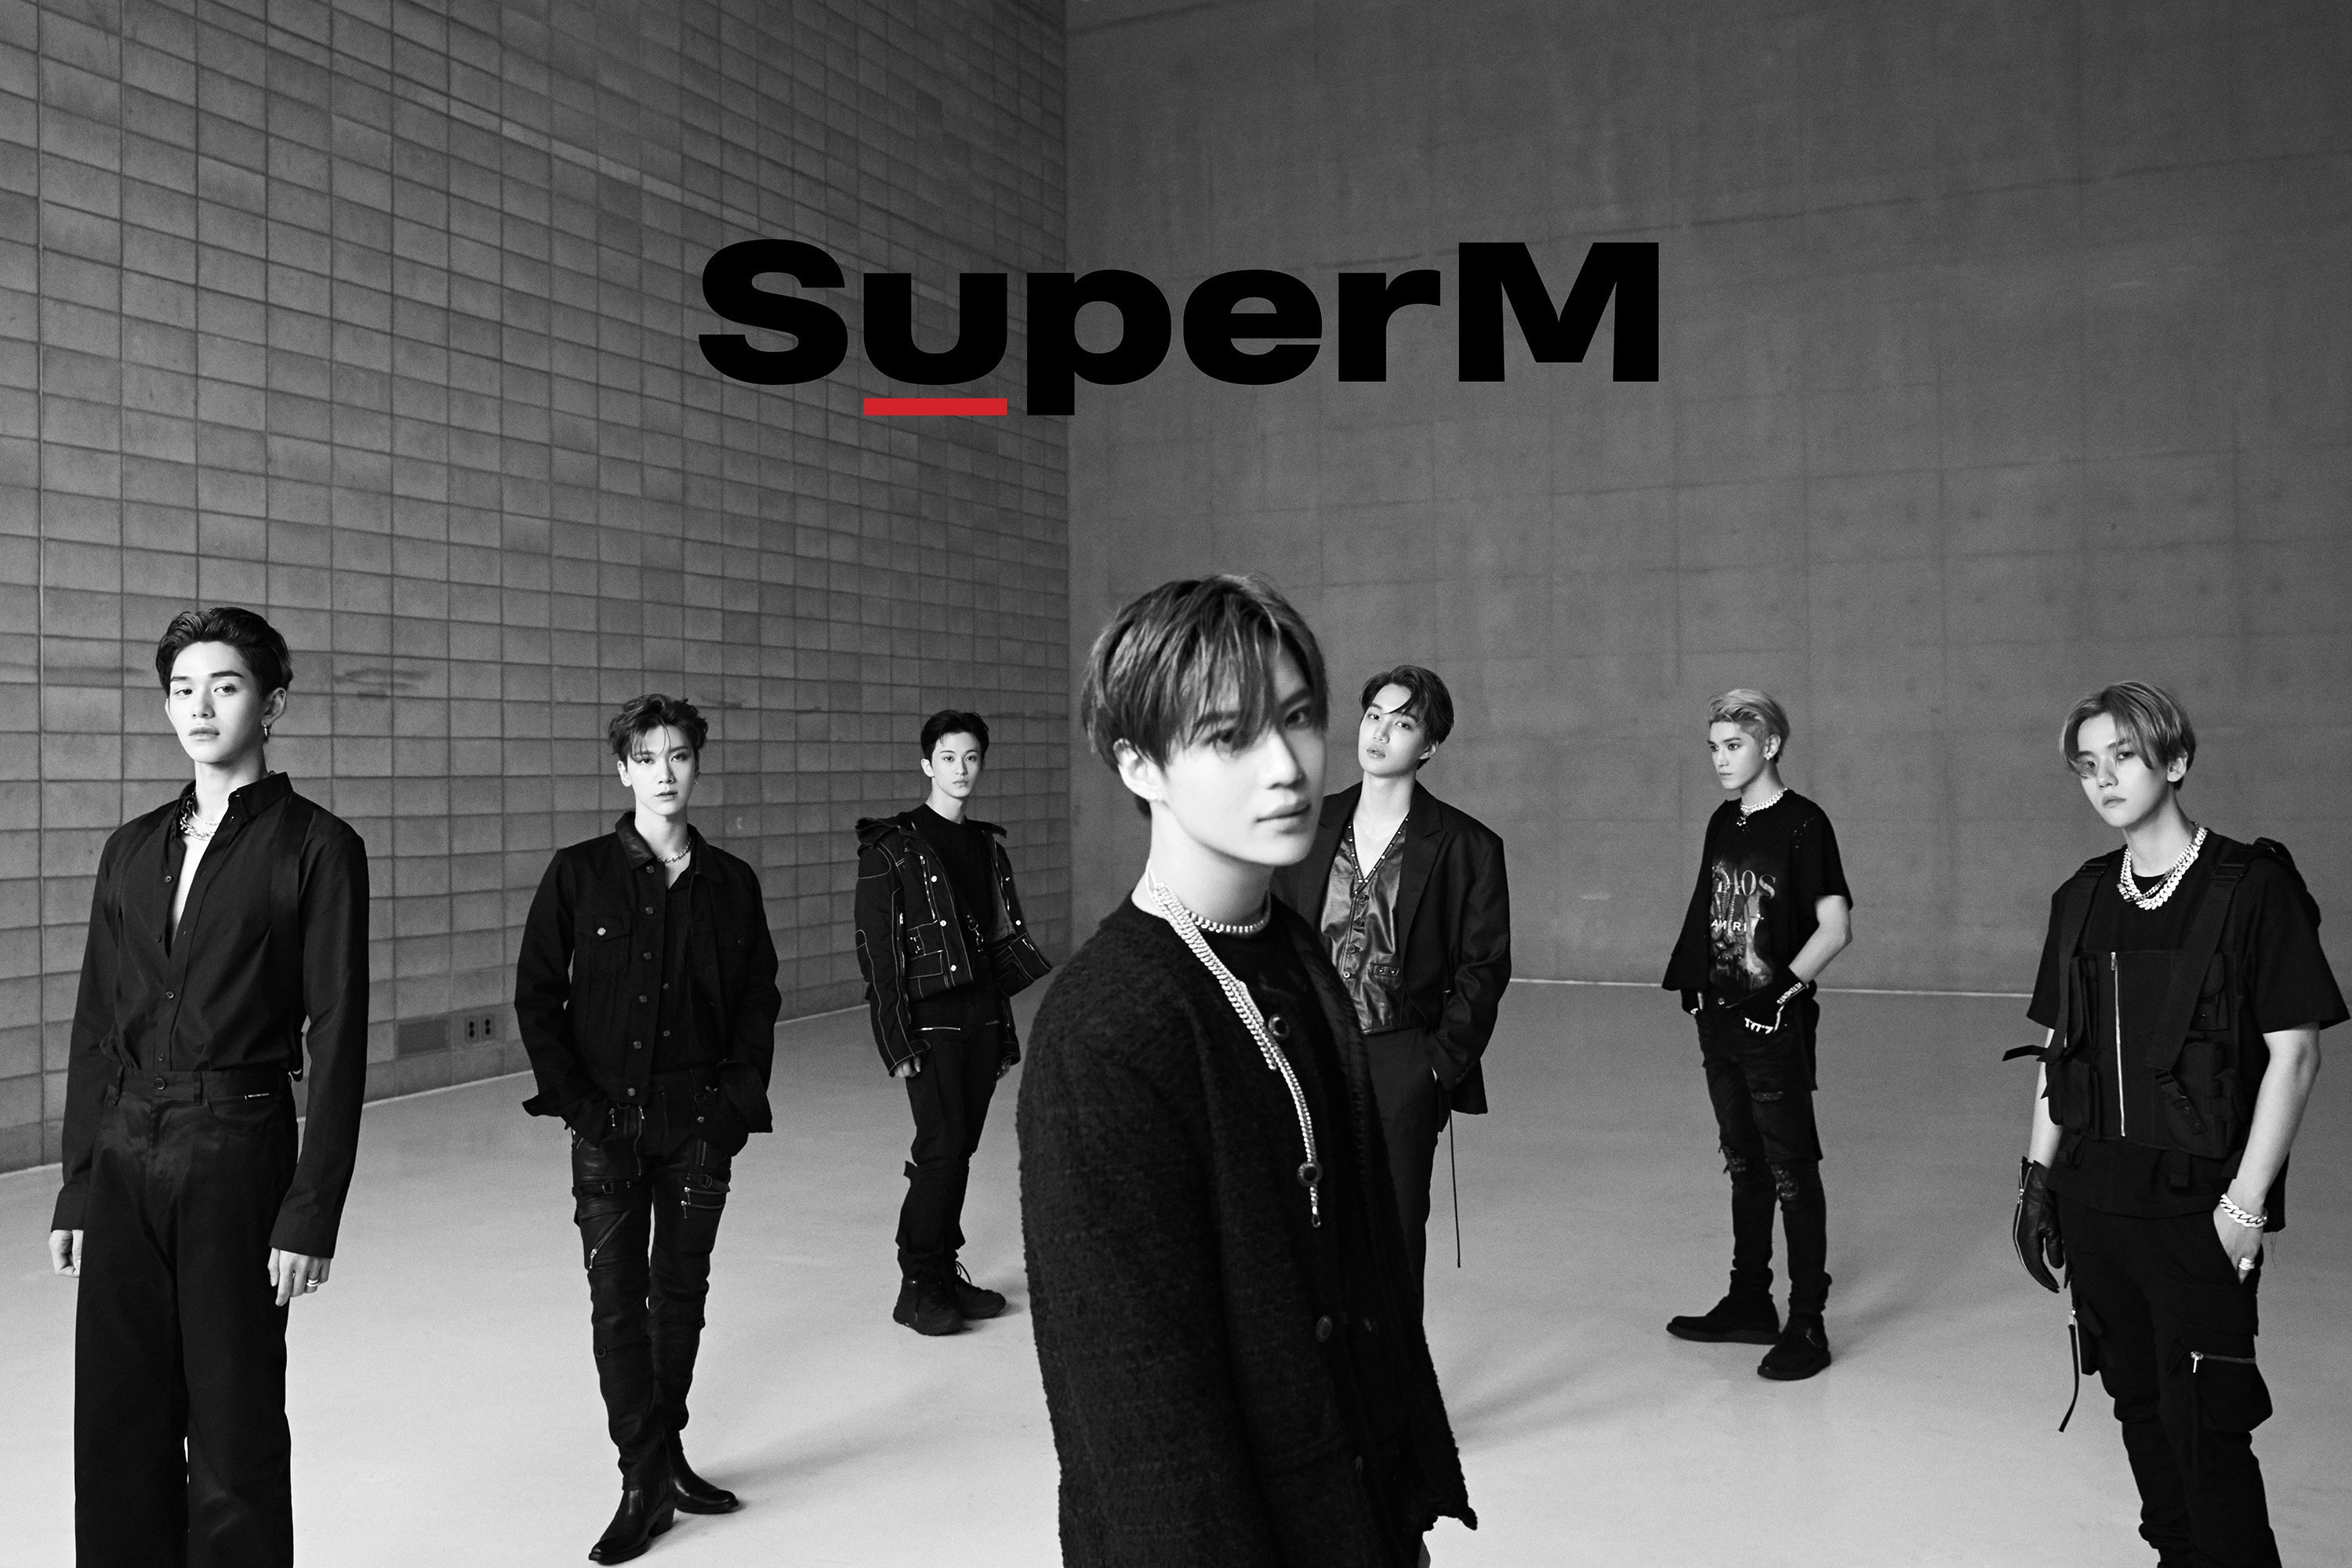 SuperM: SuperM - 1st Mini Album Review